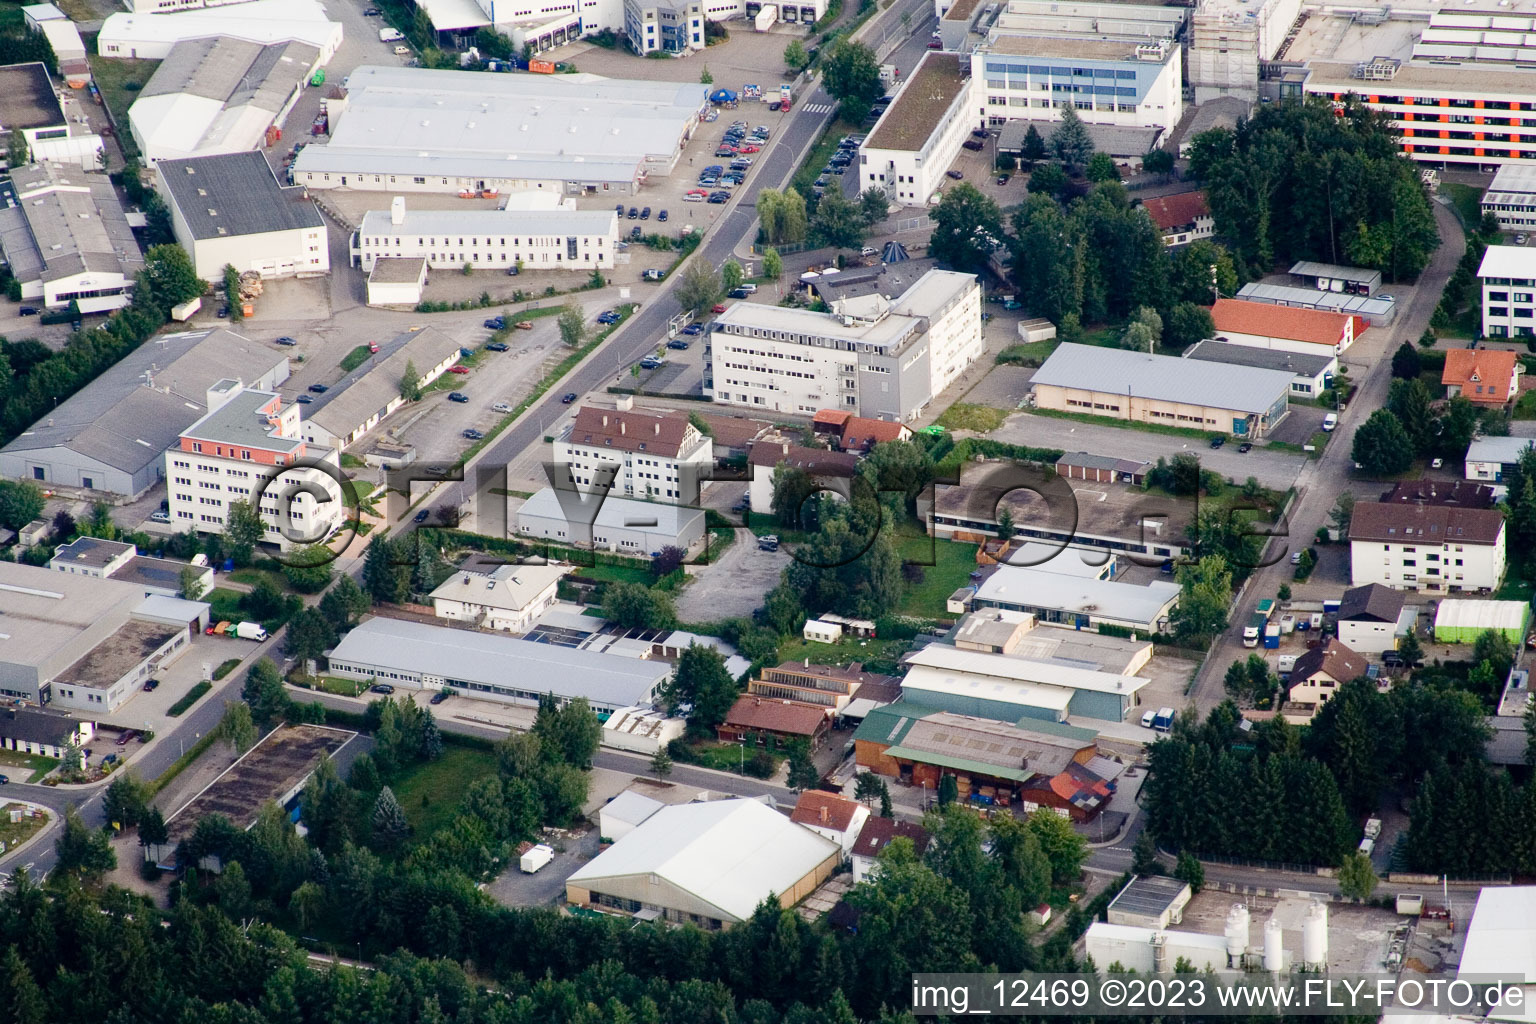 Ittersbach, zone industrielle à le quartier Im Stockmädle in Karlsbad dans le département Bade-Wurtemberg, Allemagne vue d'en haut